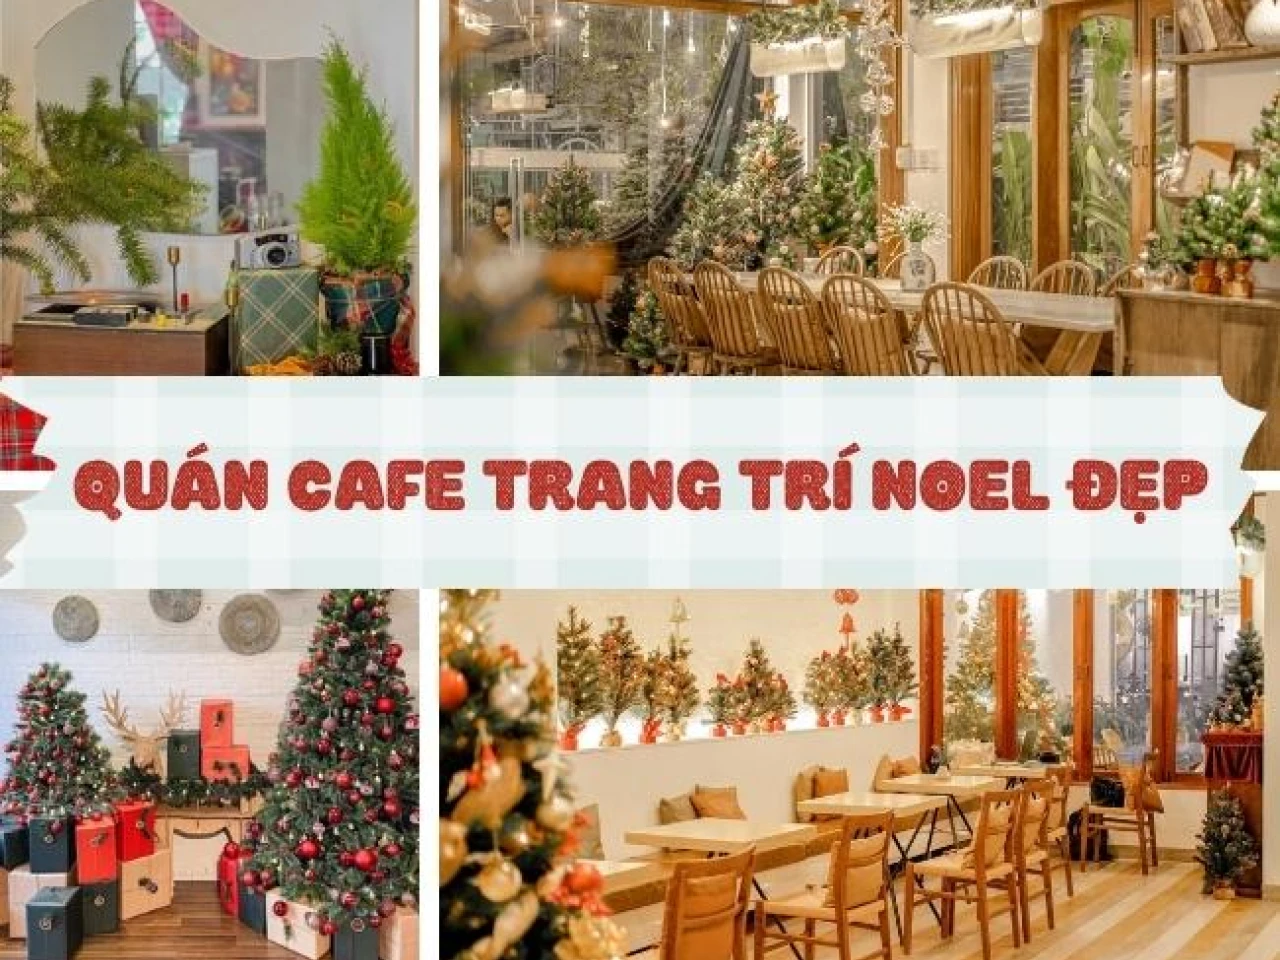 Check-in 20 Quán Cafe Trang Trí Noel Đẹp Ở Sài Gòn, Lung Linh ...